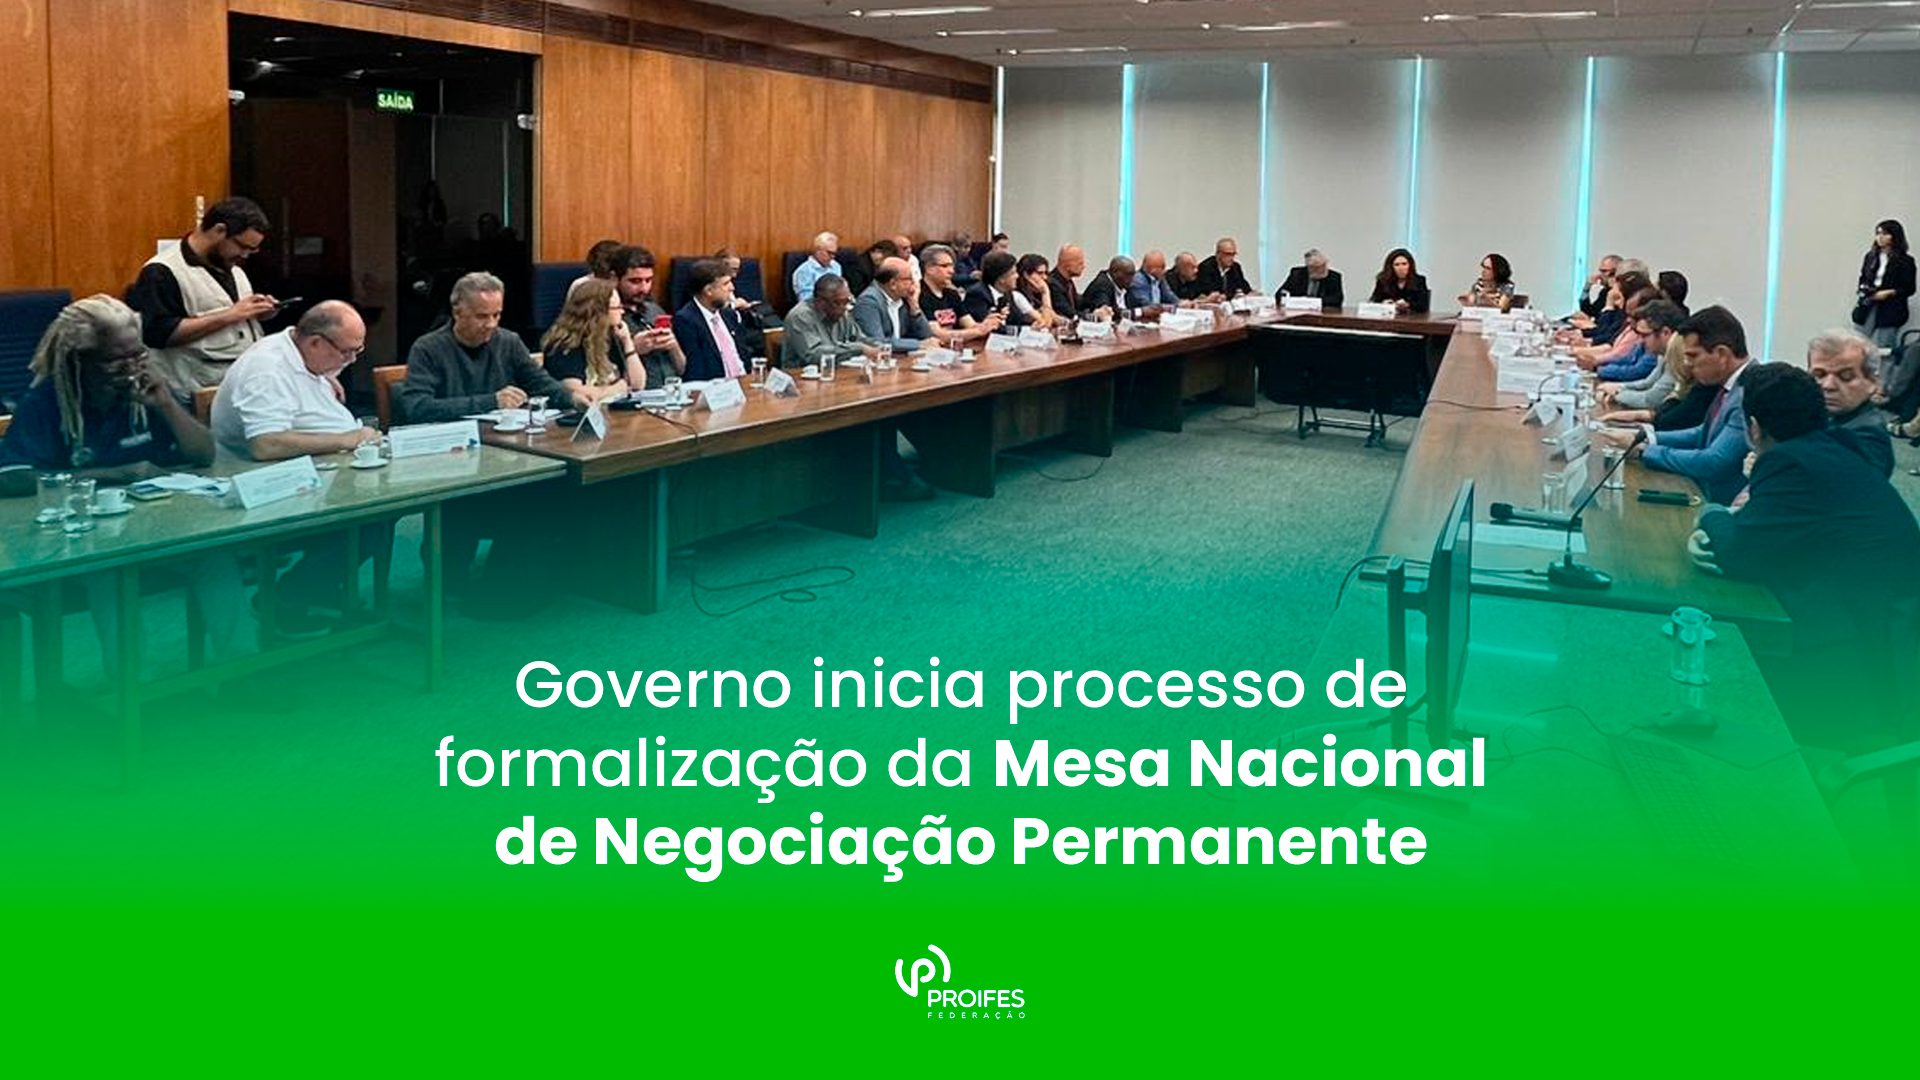 Governo inicia processo de formalização da Mesa Nacional de Negociação Permanente